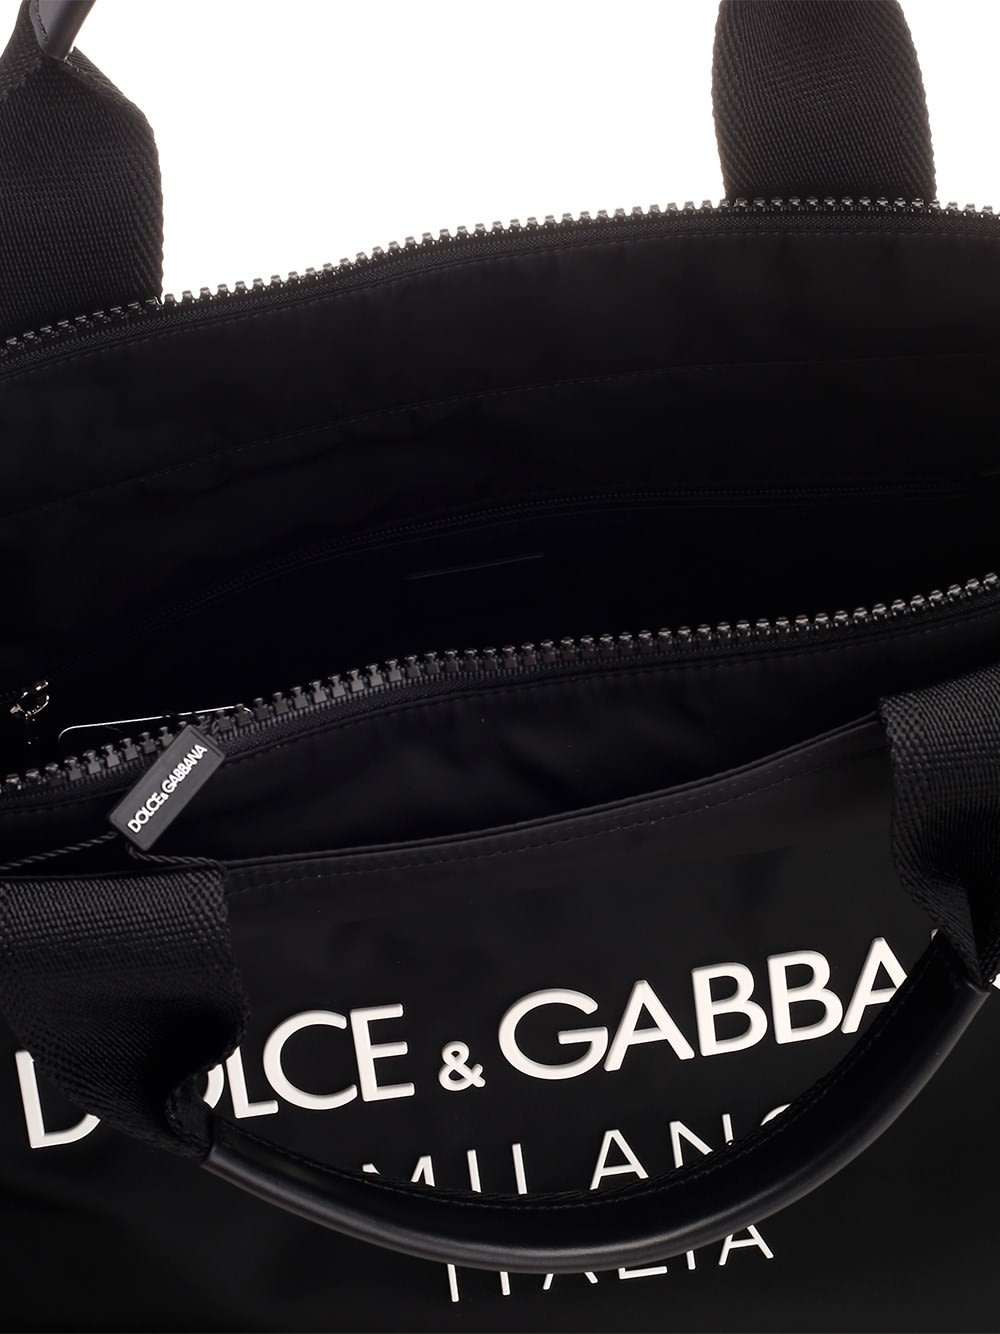 Shop Dolce & Gabbana Signature Tote Bag In Black